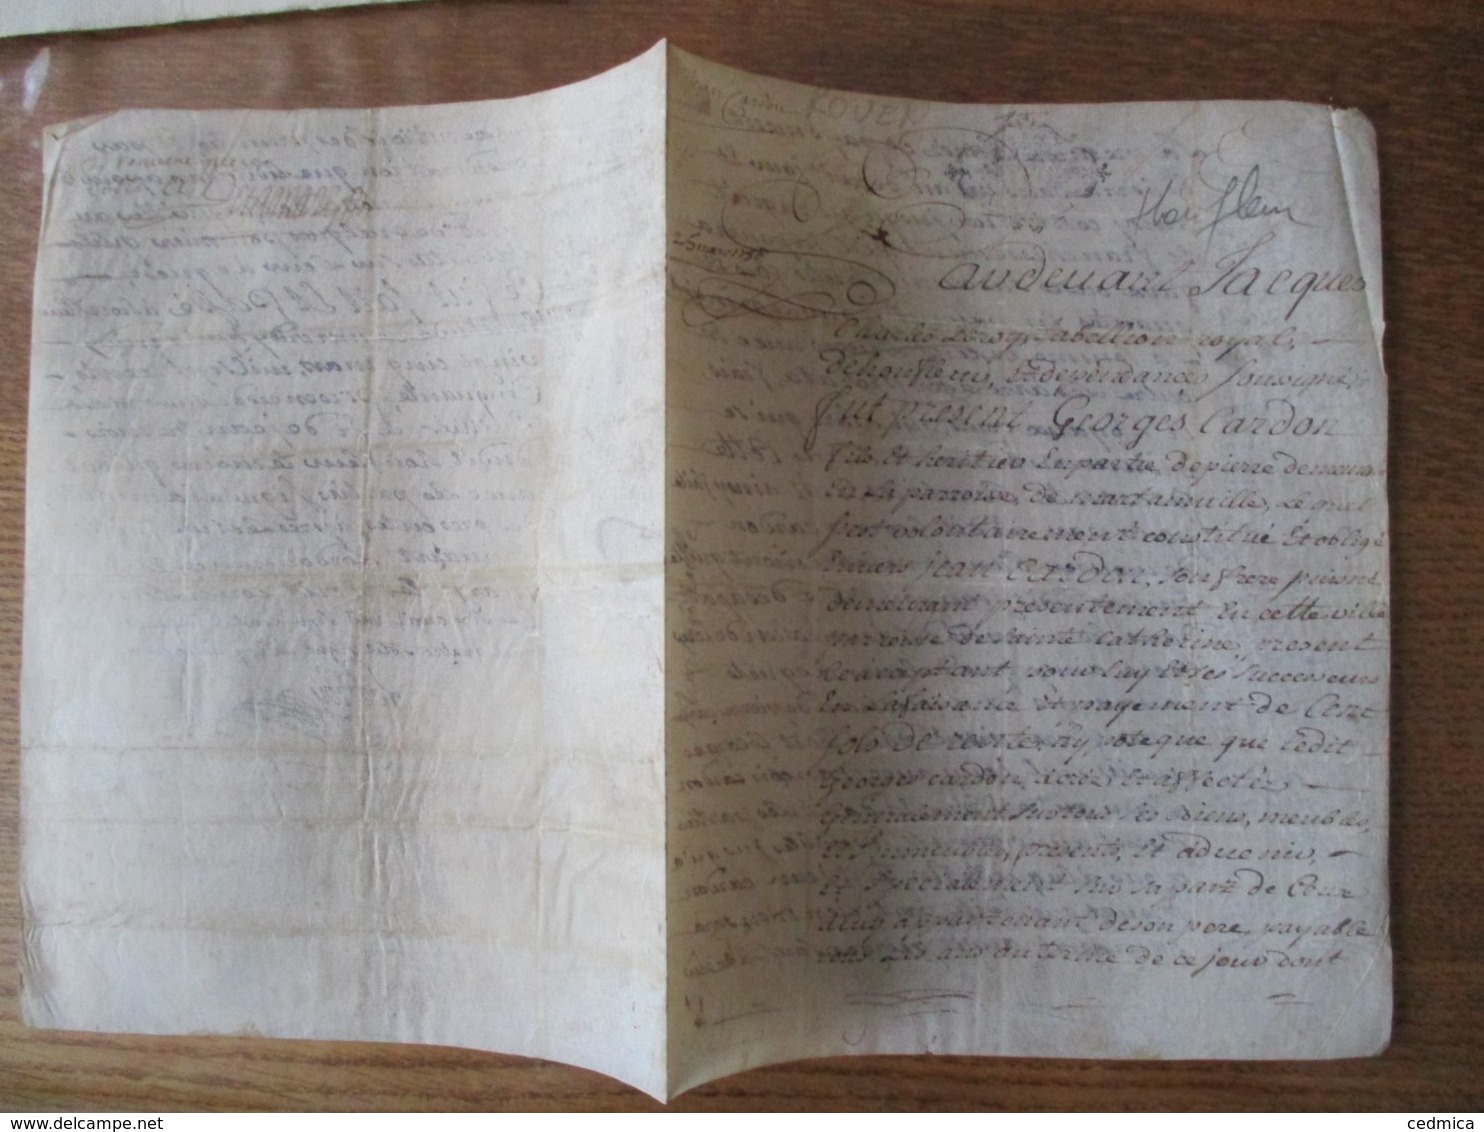 HONFLEUR LE 25 MARS 1750 PARCHEMIN GEORGES CARDON FILS ET HERITIER D PIERRE DEMEURANT EN LA PAROISSE DE MARTINVILLE ET - Manuskripte